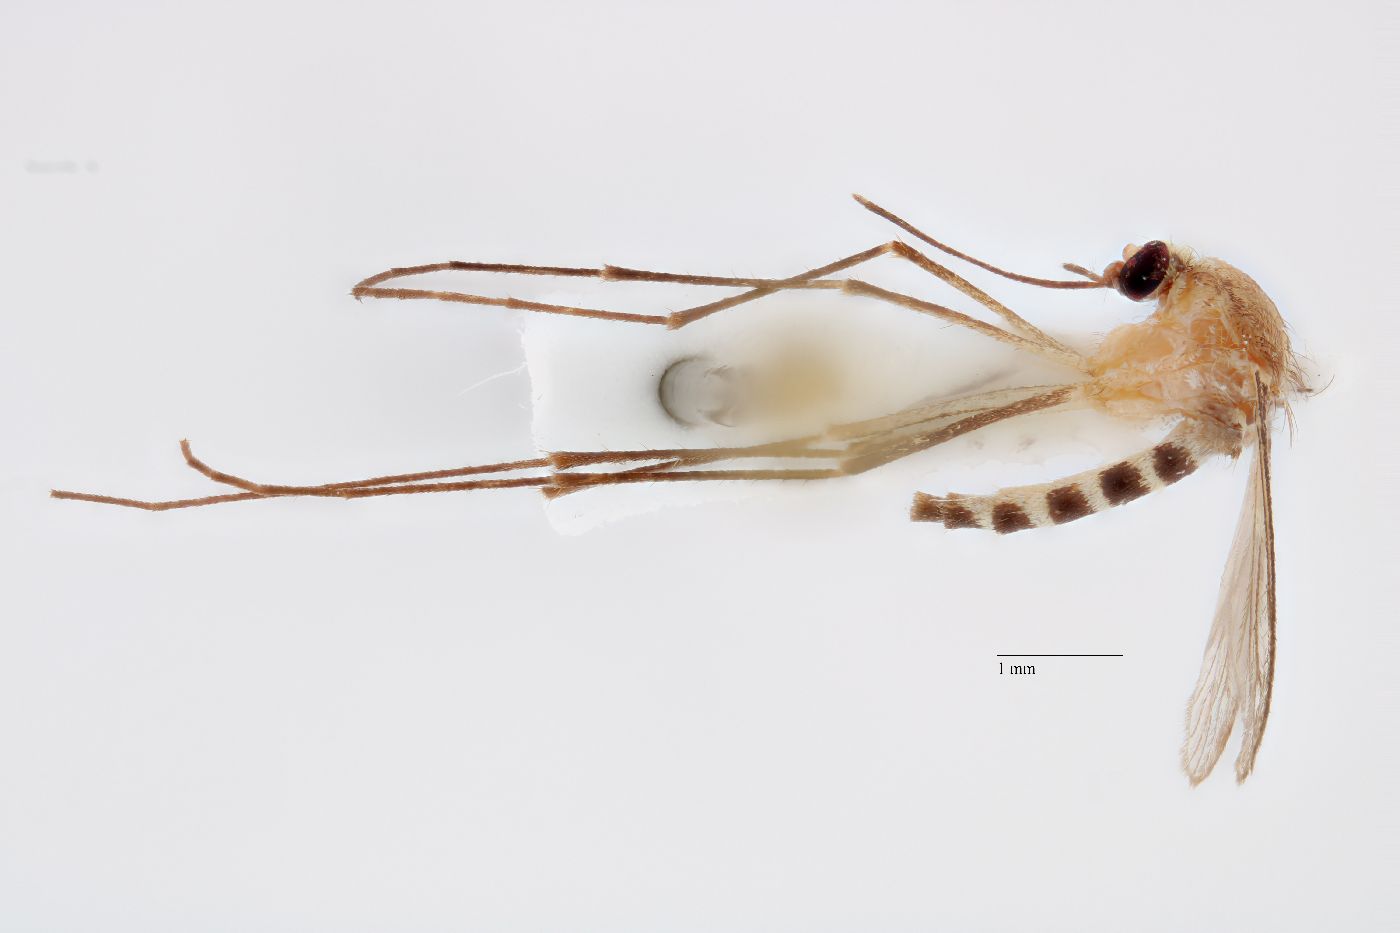 Aedes obturbator image